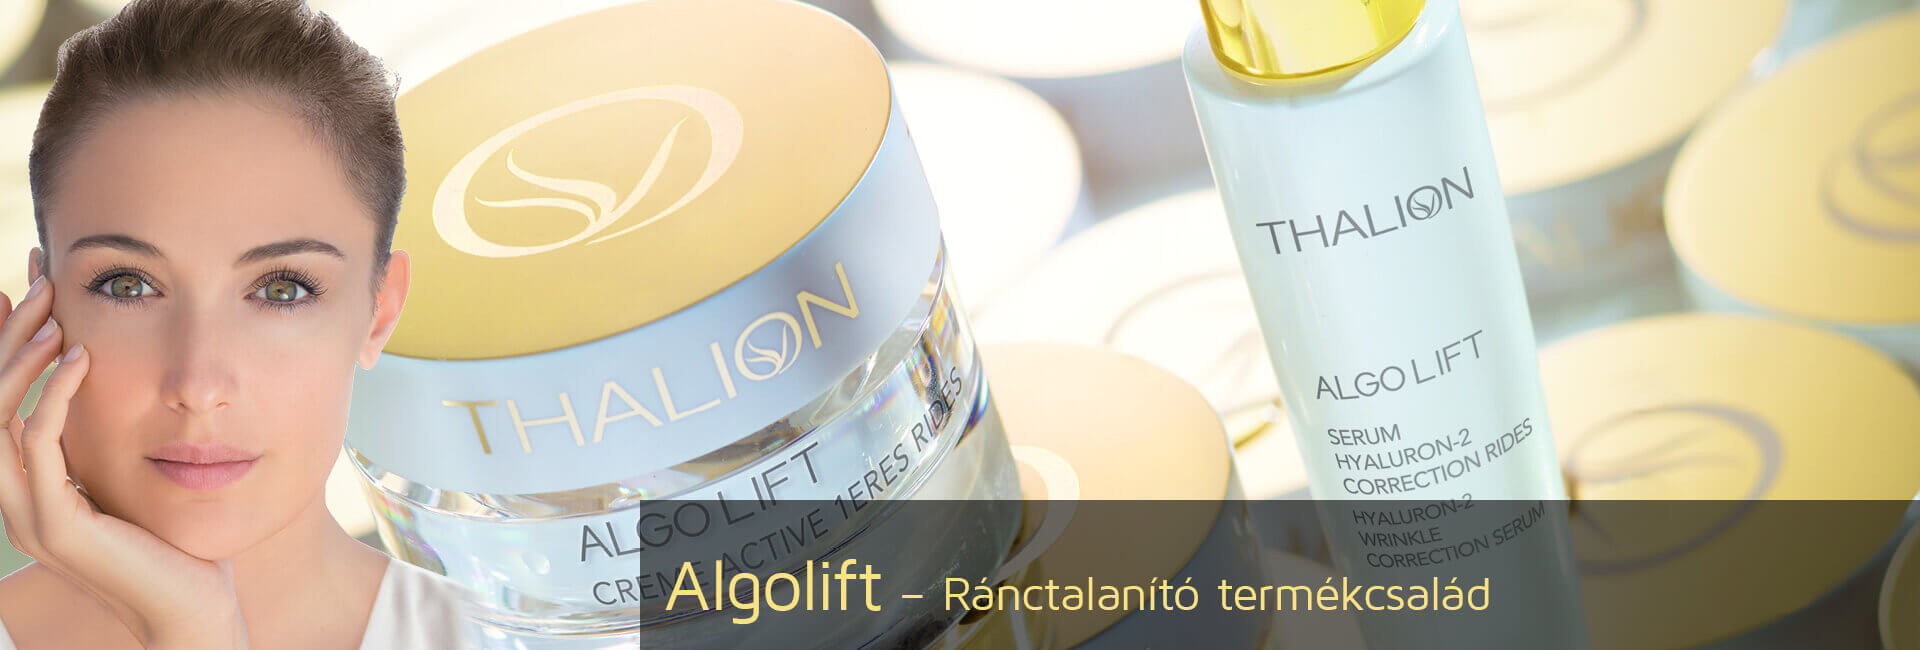 Algolift Wrinkles - Bőrfiatalítás &  Ránctalanítás